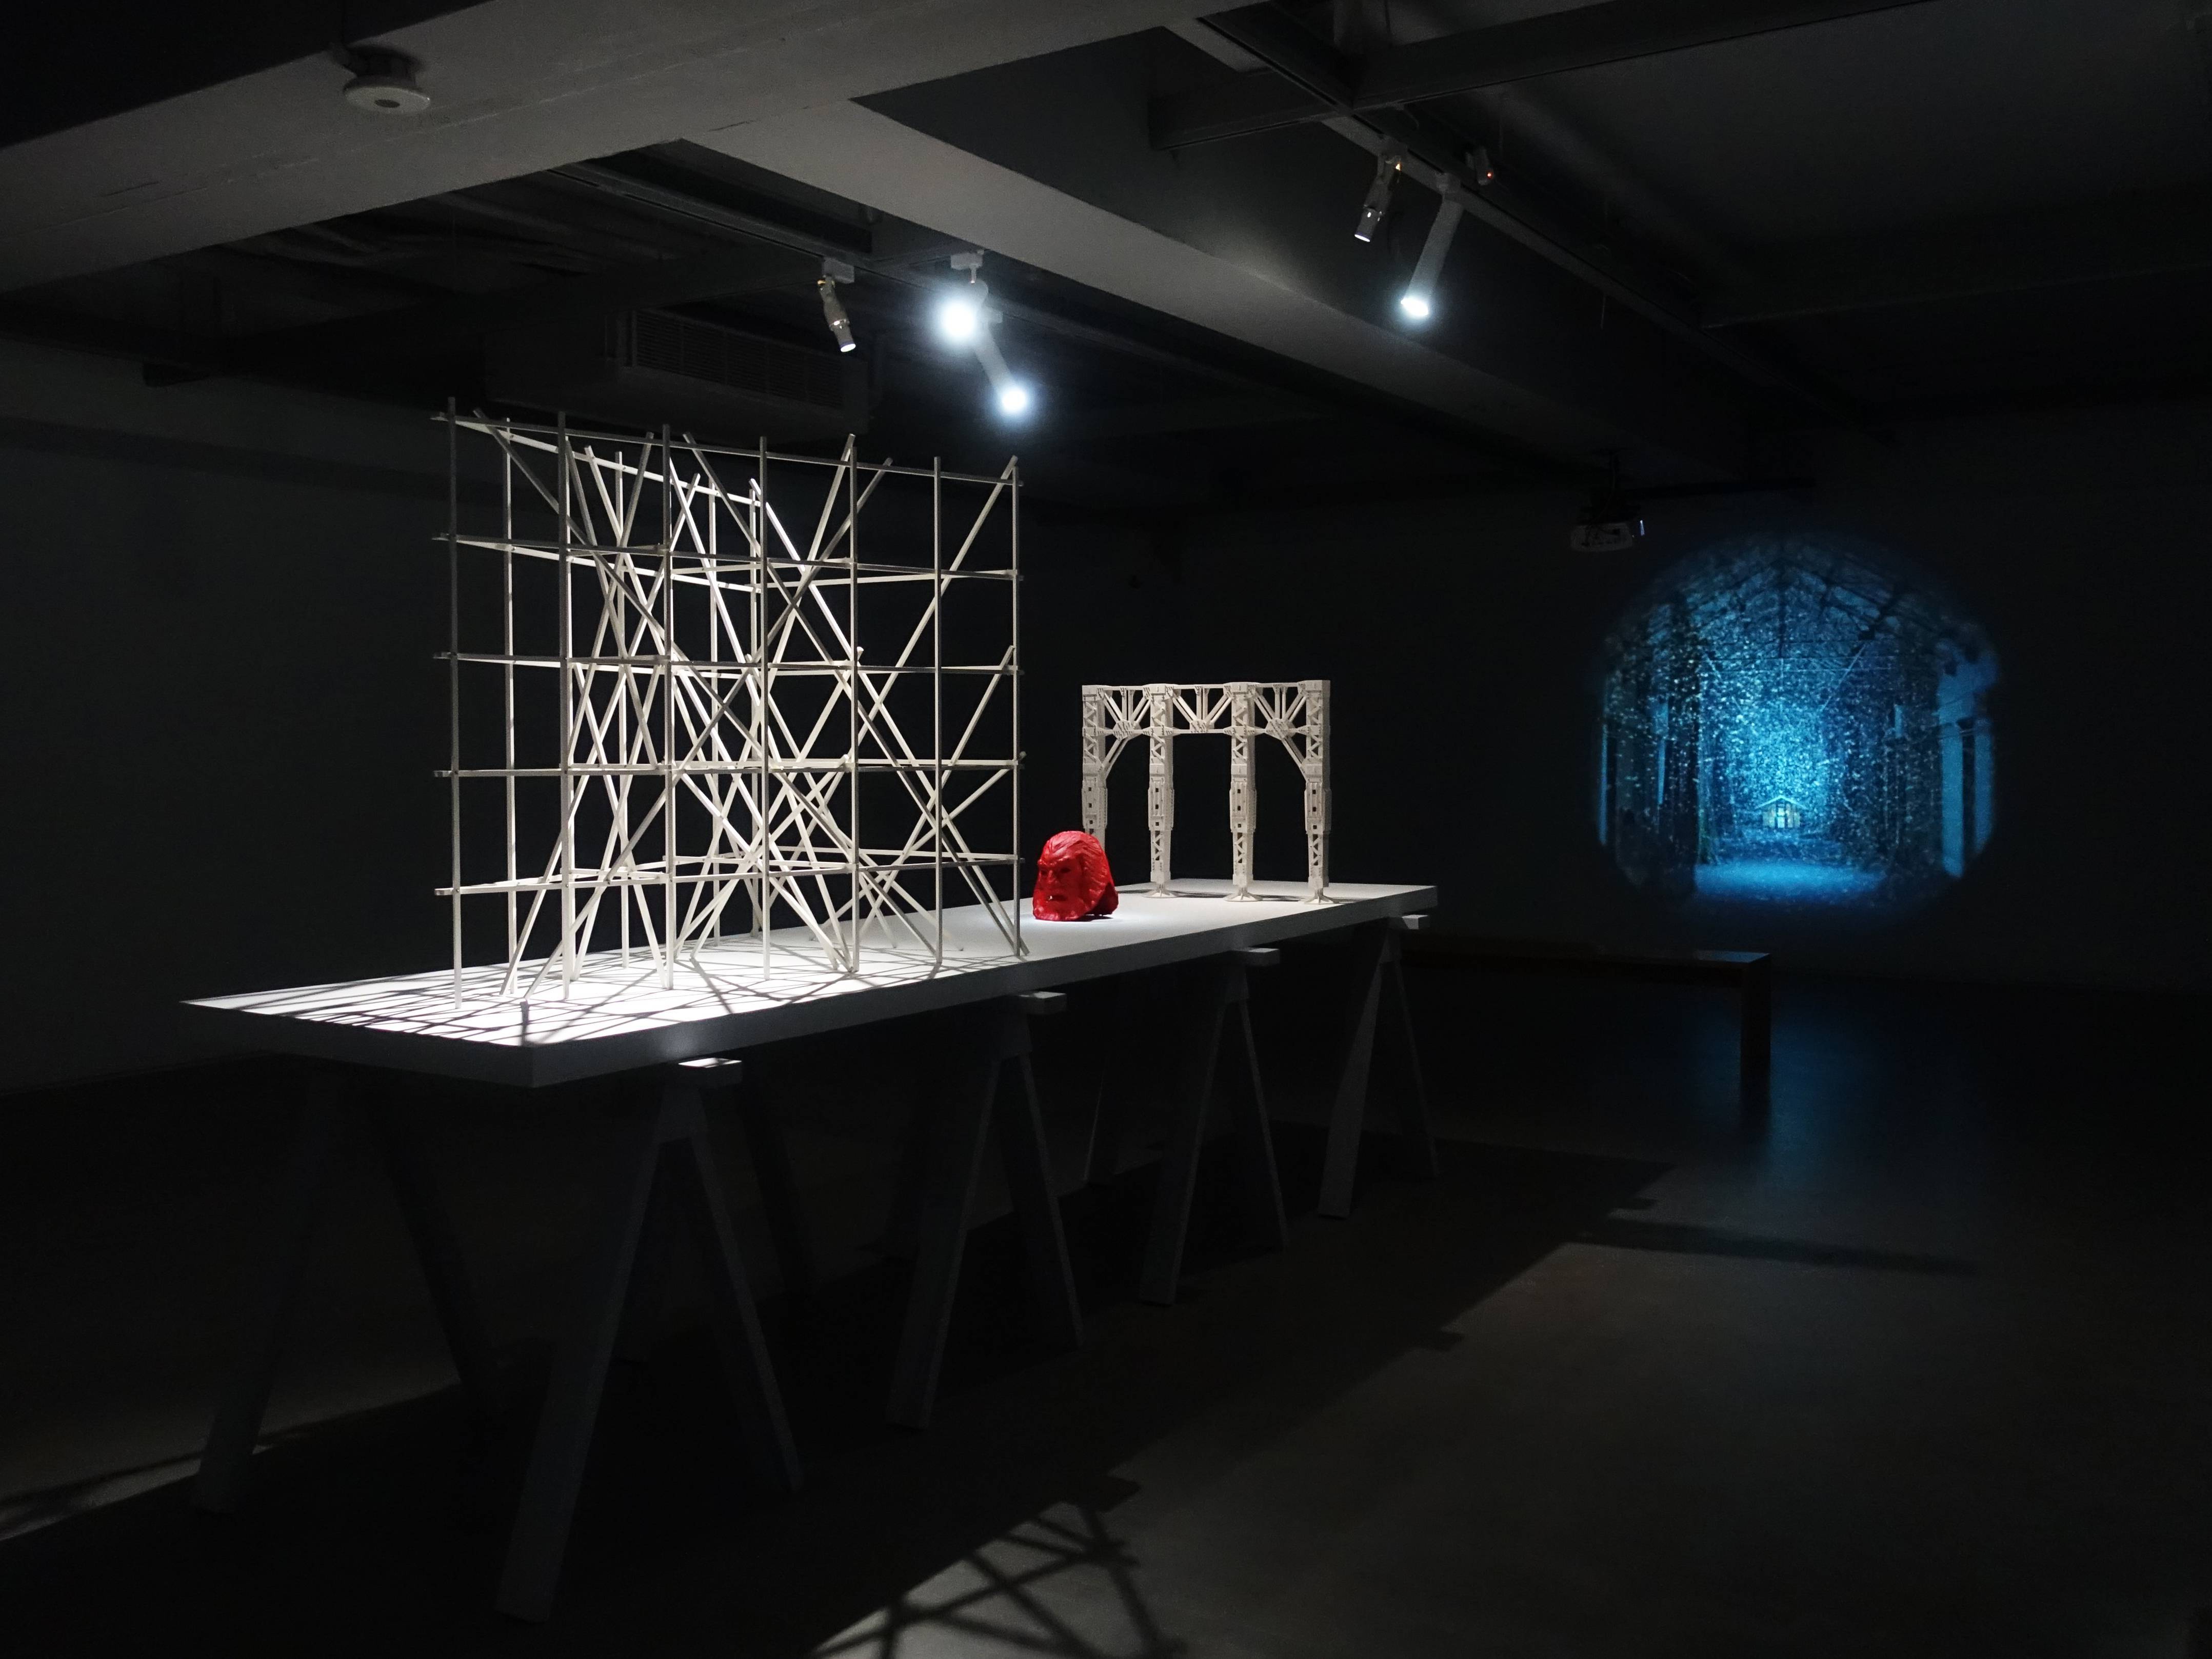 双方藝廊展出德國藝術家佛羅里安．克拉爾錄像裝置作品。